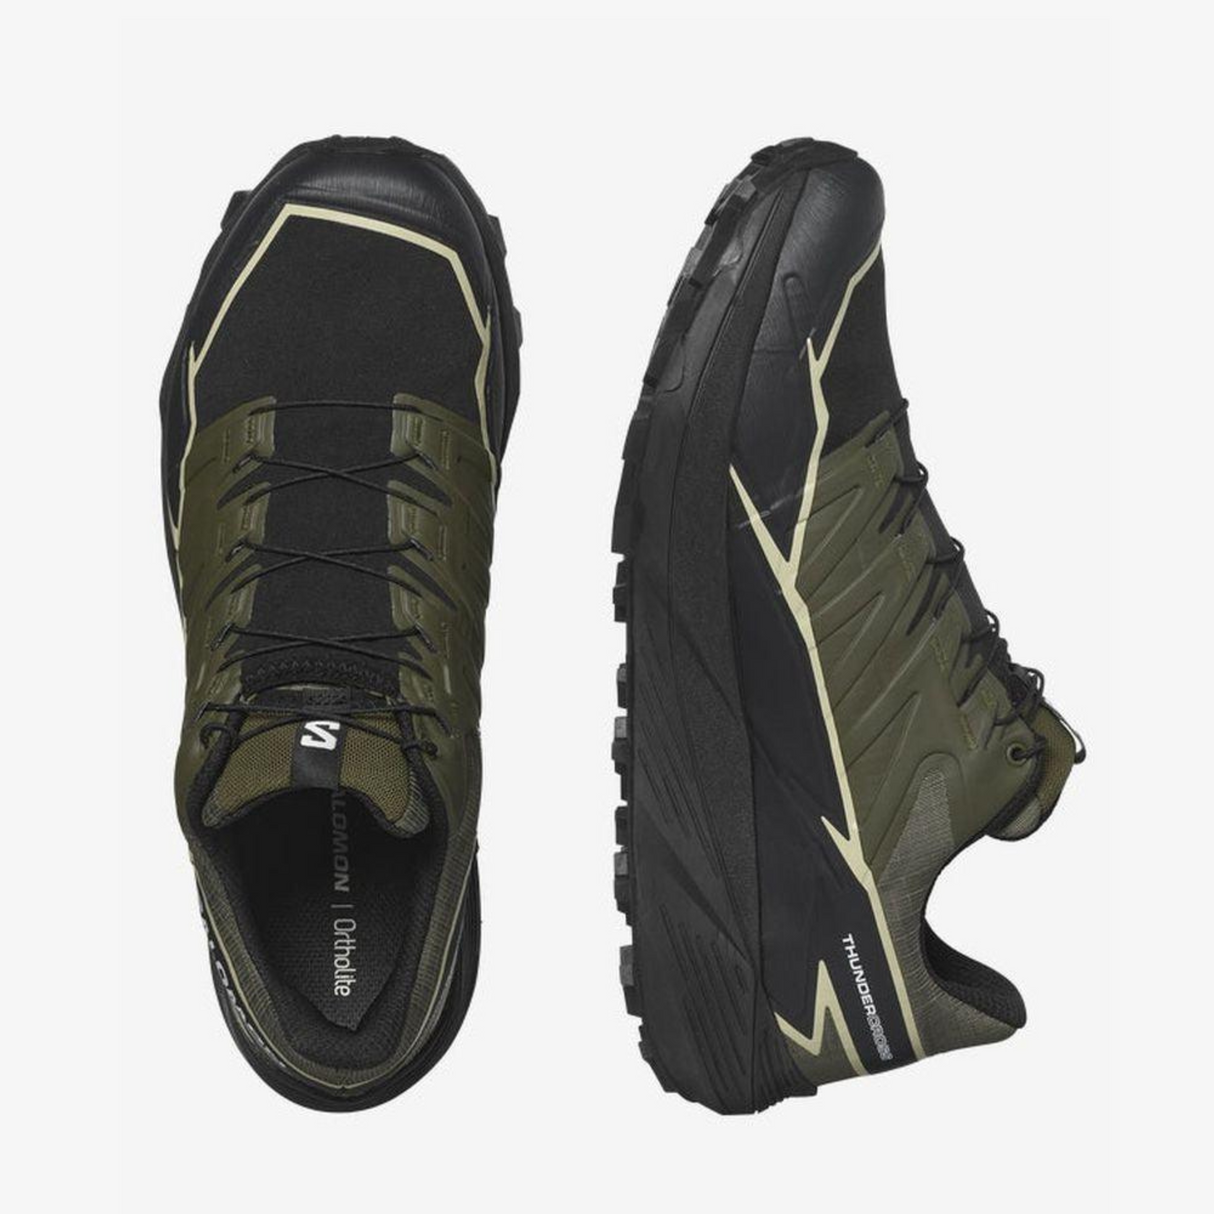 Salomon - Salomon Men's Thundercross Gtx Trail Running Shoes (Olive Night/Black/Alfalf) - Cam2 